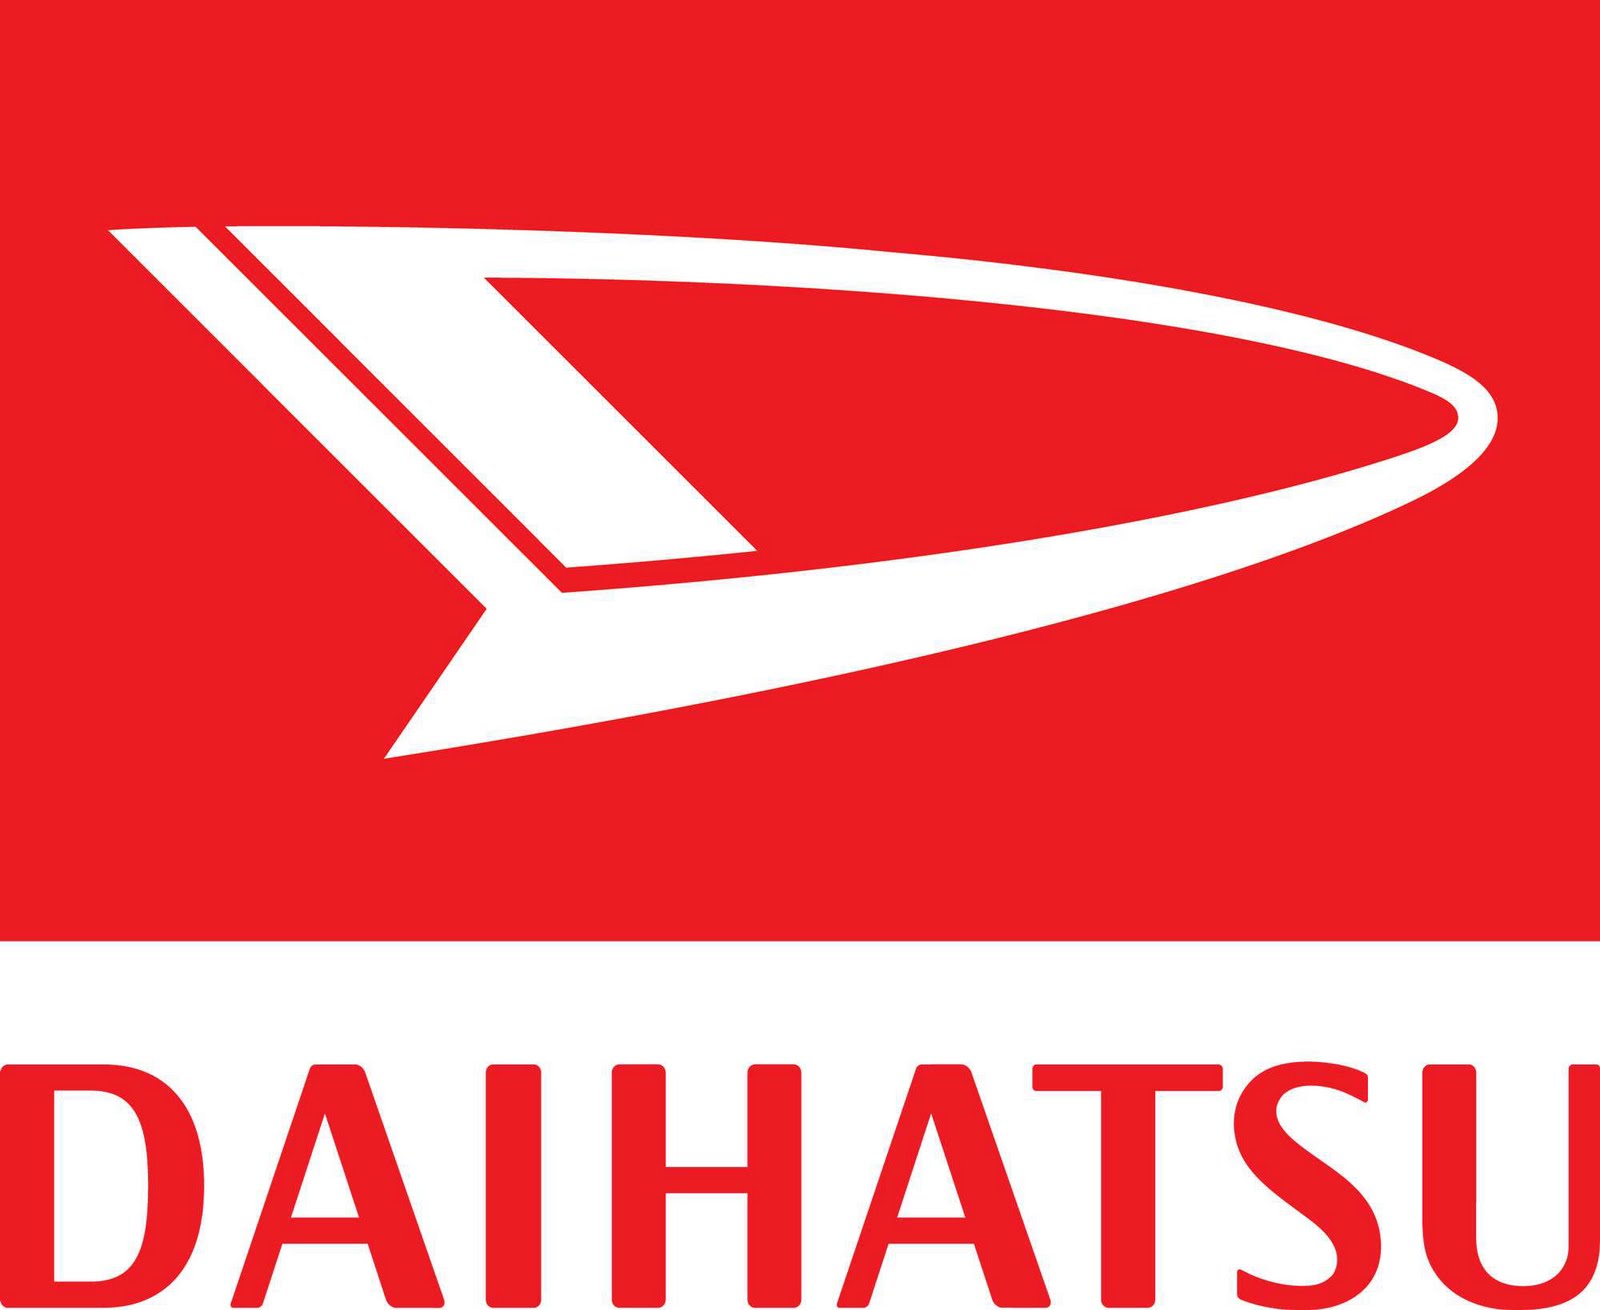 Daihatsu Logo | Auto Blog Logos